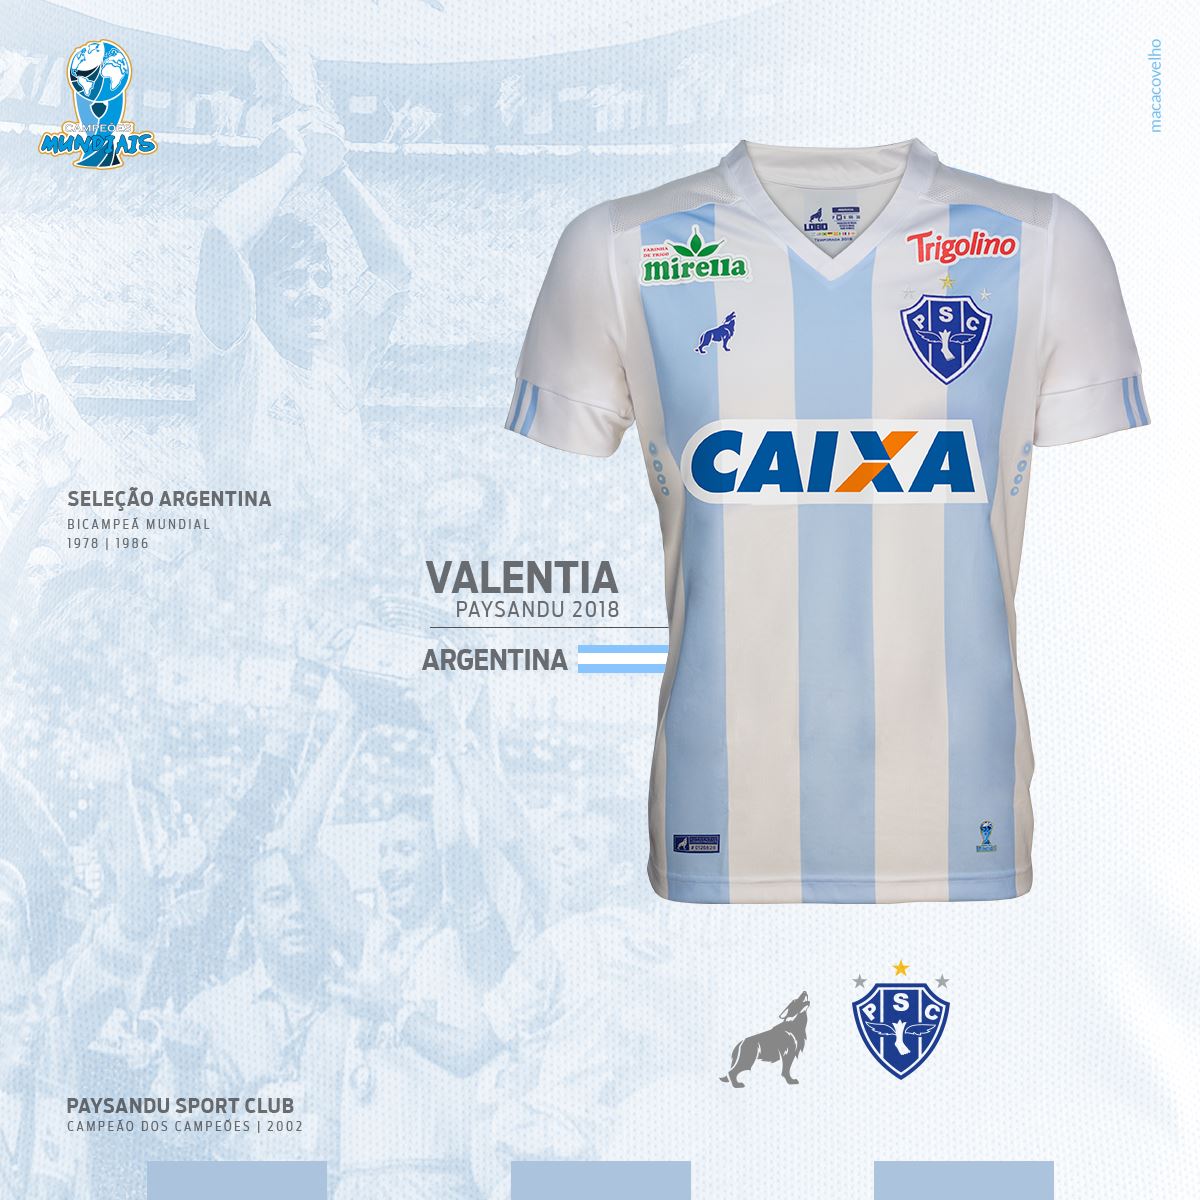 Insólito: un equipo brasileño usará una camiseta en honor a la Selección argentina